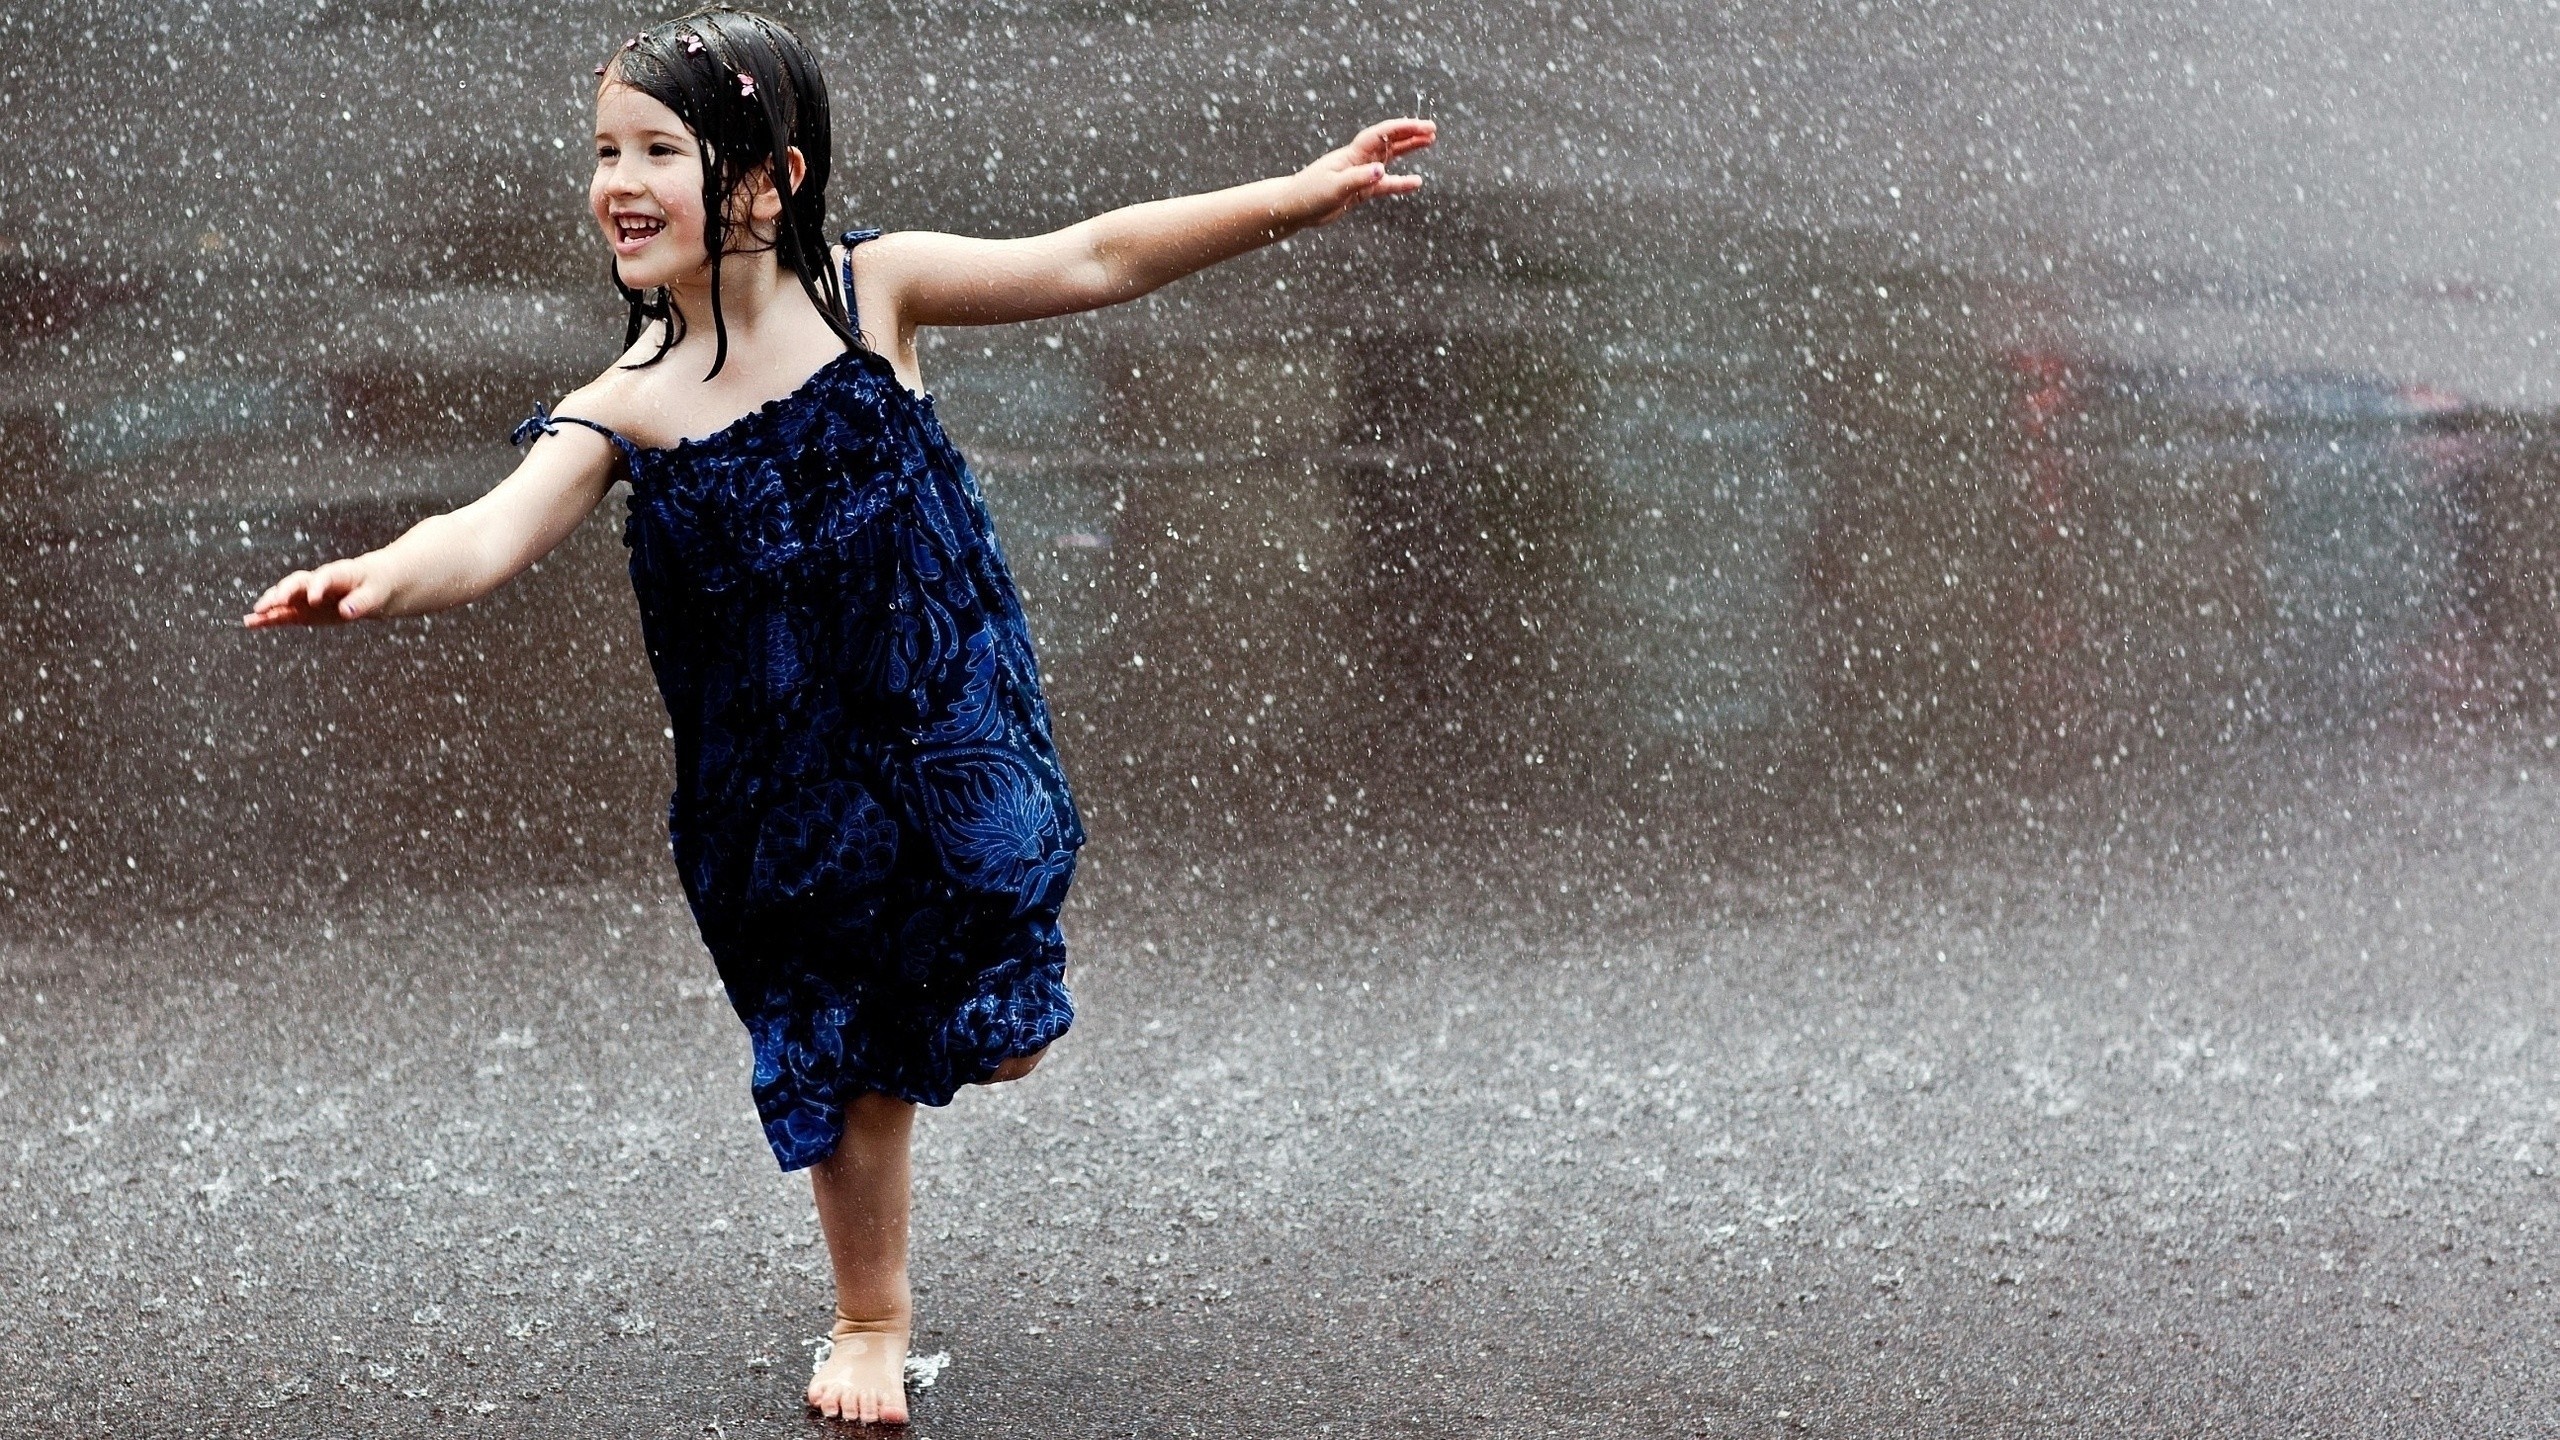 Happy Child Runs In The Rain Wallpaper And Image